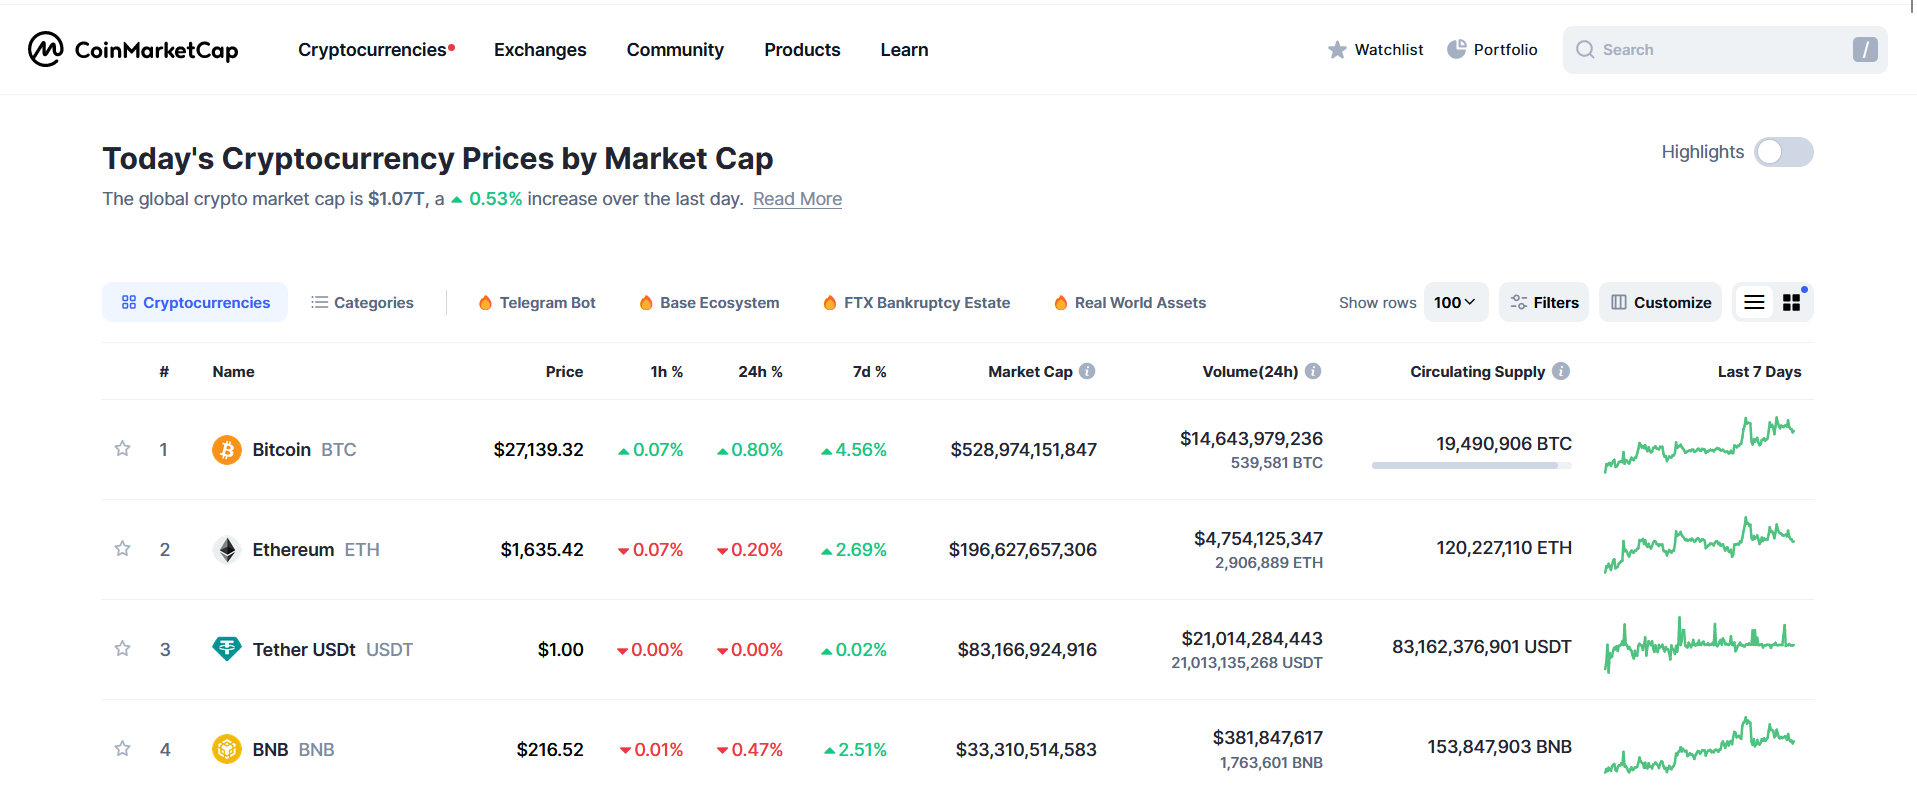 Capture d'écran de la page d'accueil de CoinMarketCap